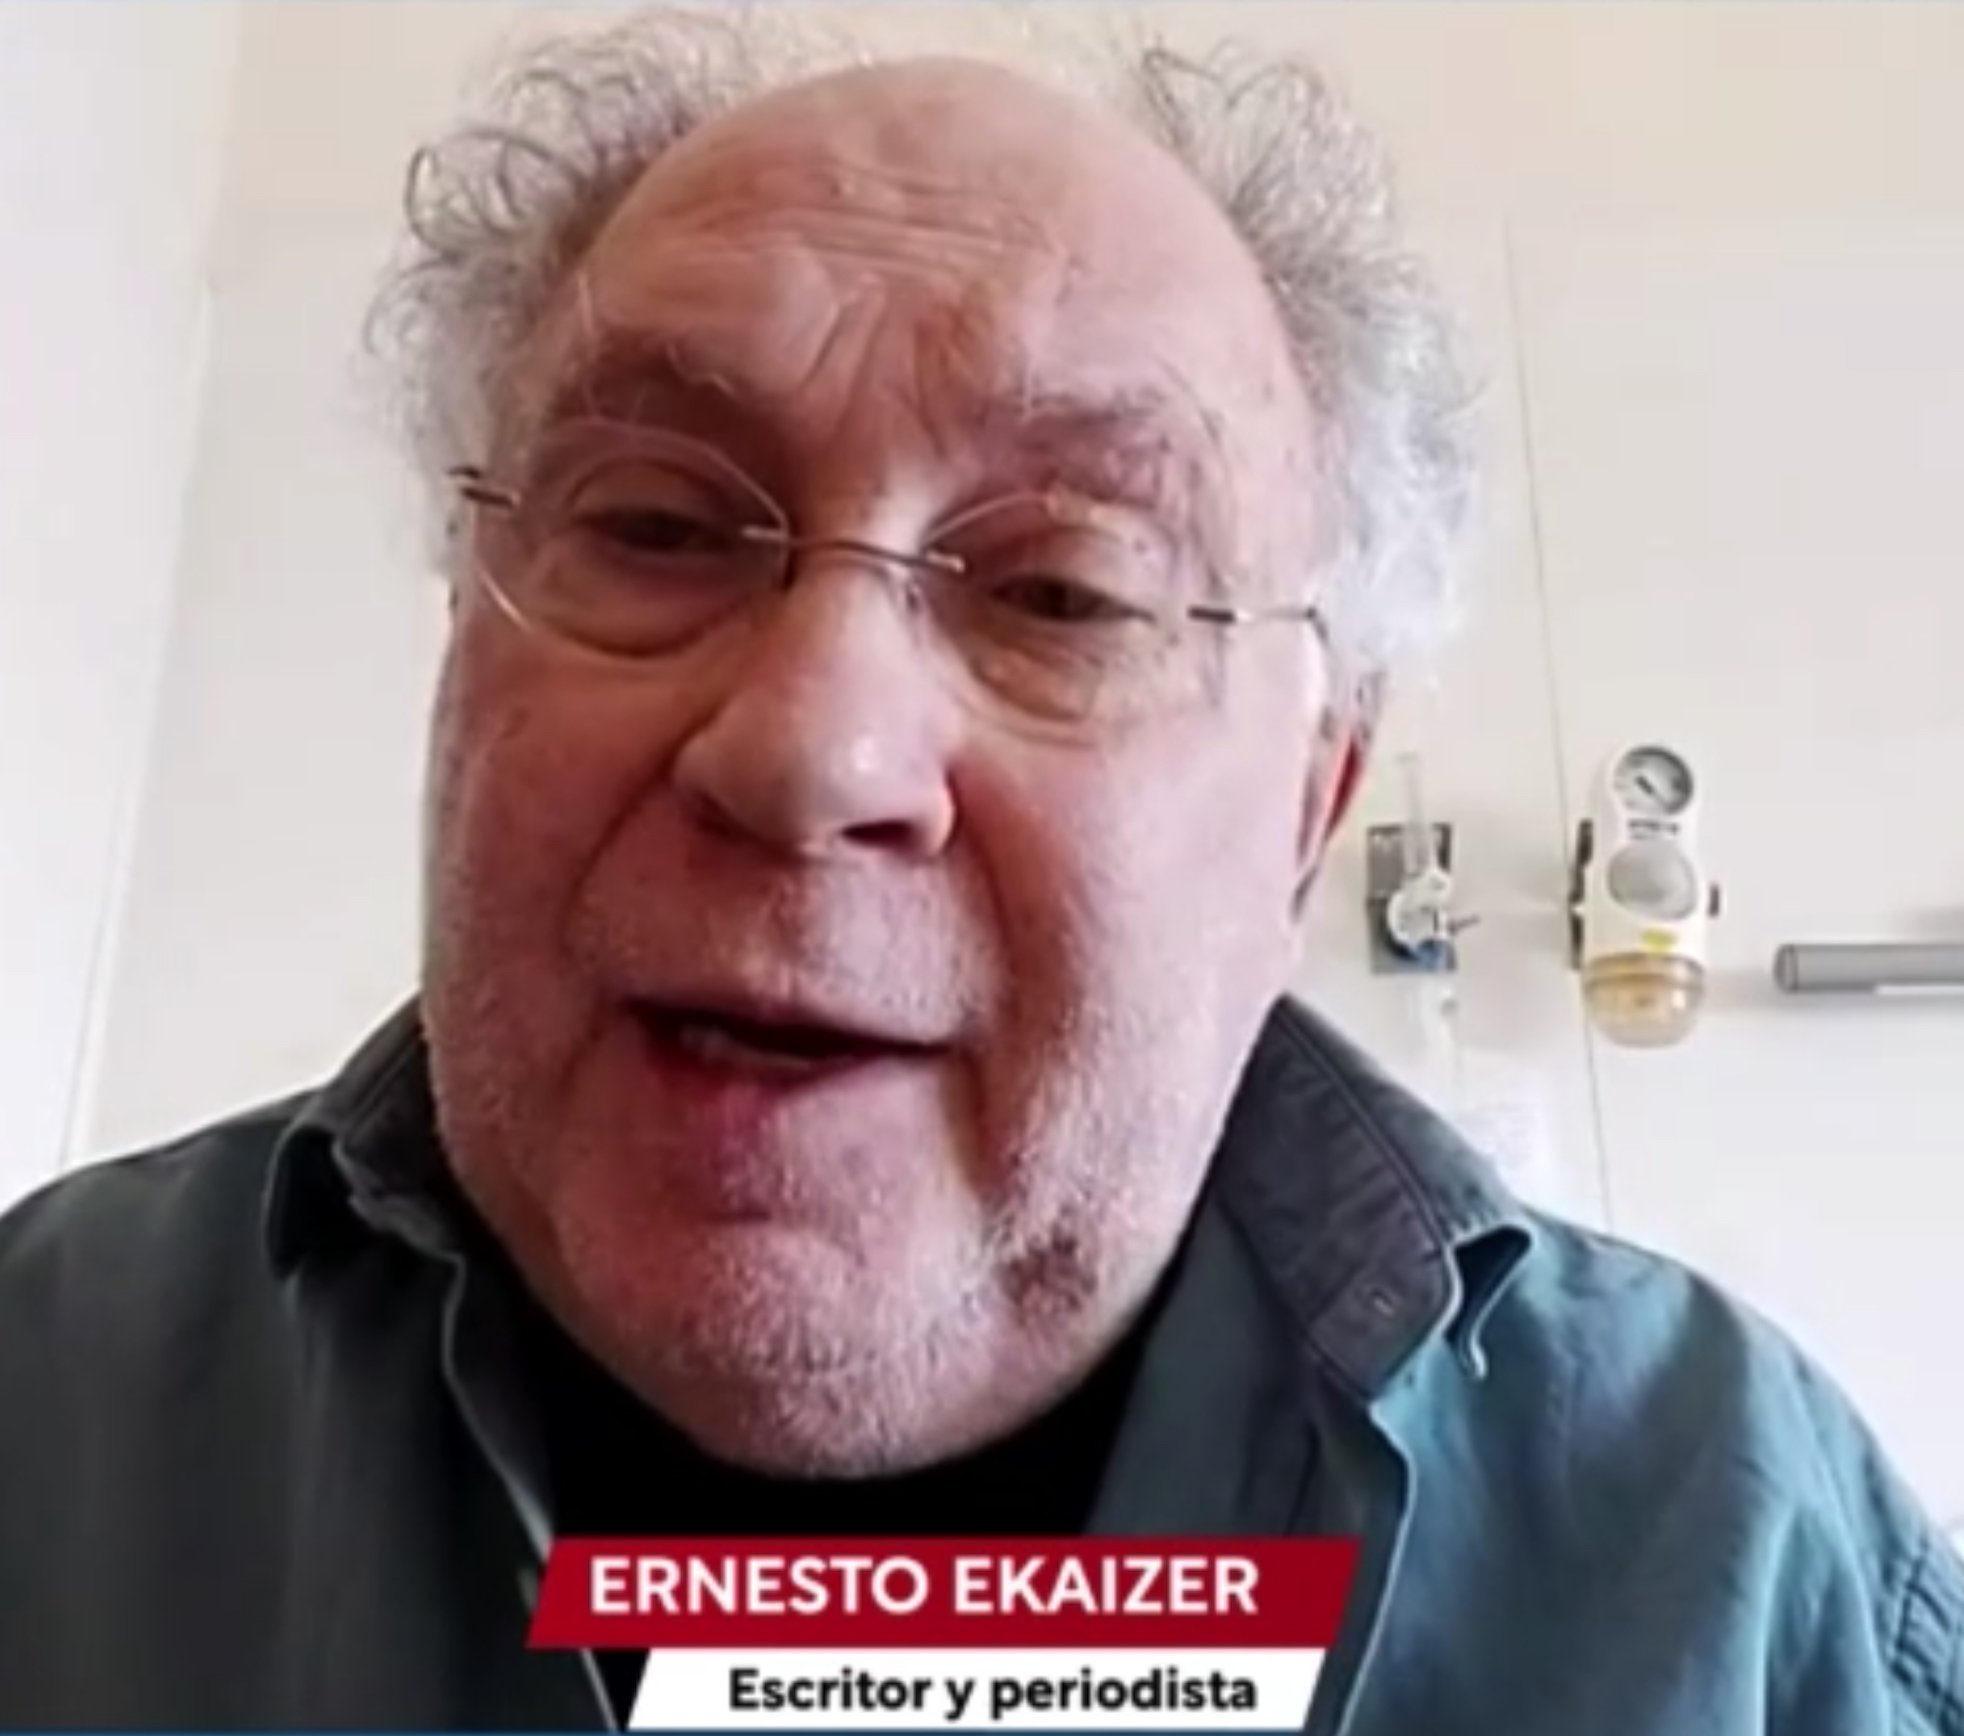 Ernesto Ekáizer, novament a l'hospital després de passar la Covid: "estic bé"